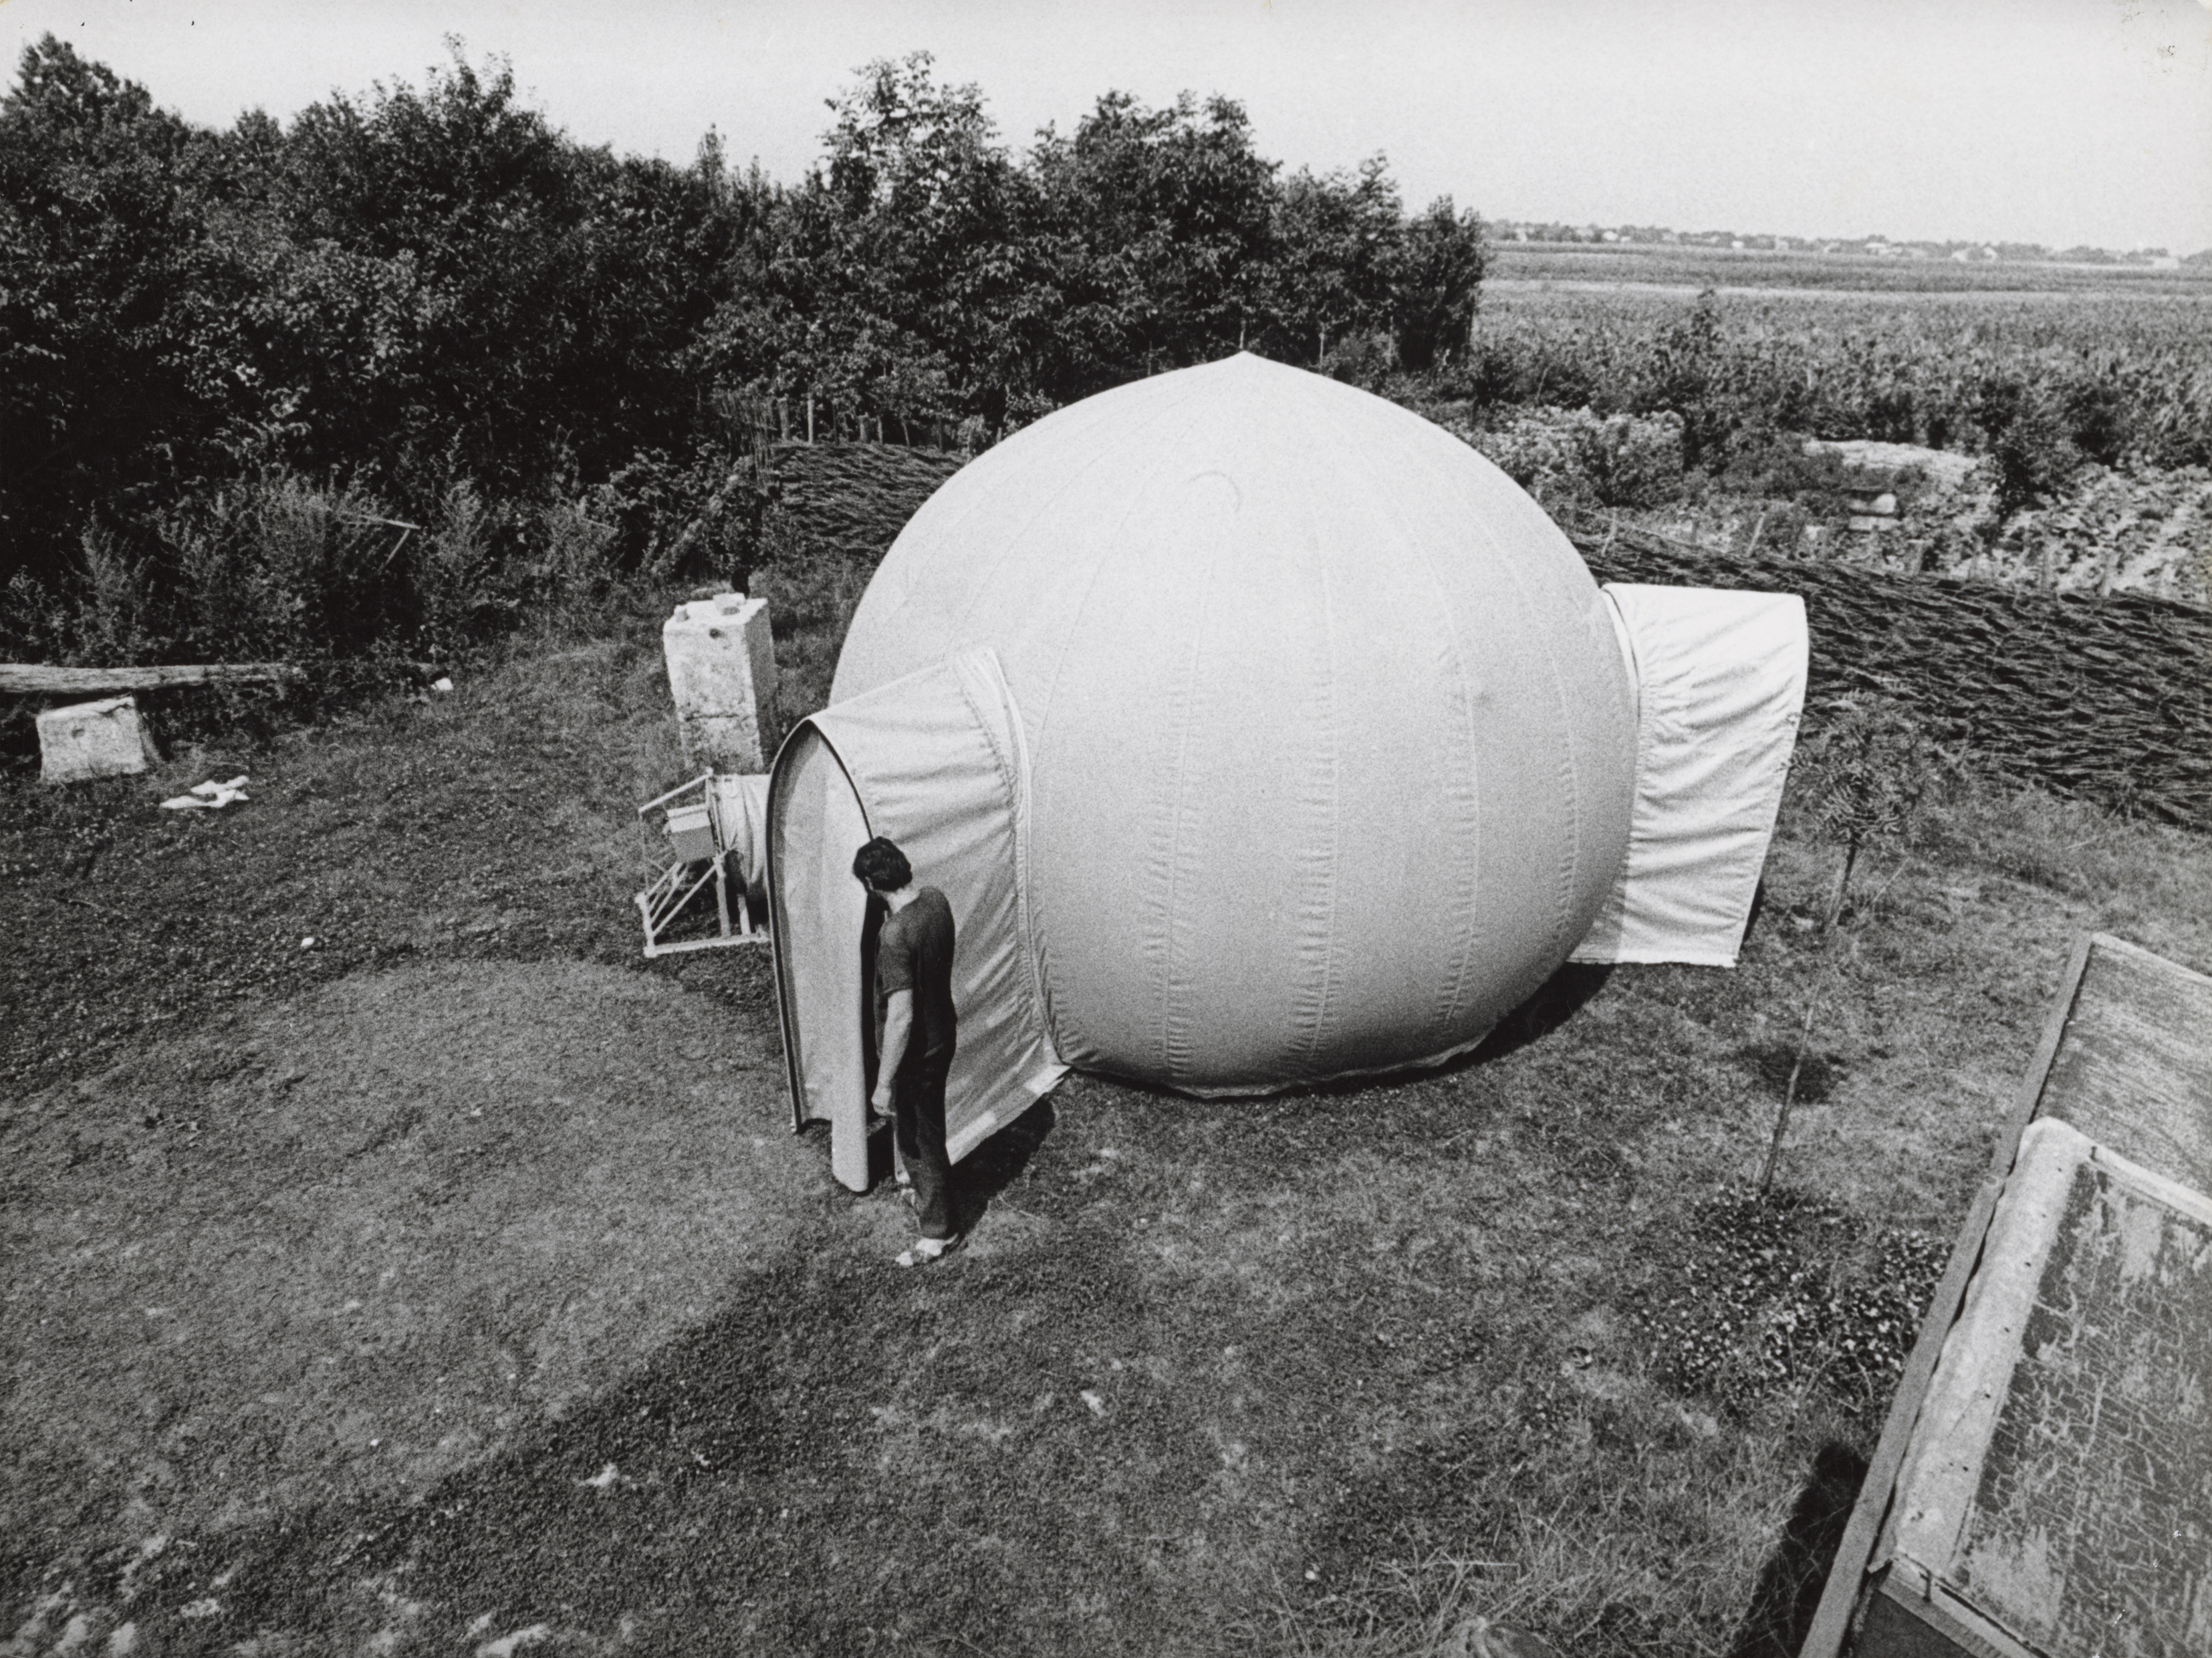 Stano Filko: Kozmos. 1968. 700 × 460 × 350 cm, multimediálny environment, nafukovací stan s audiovizuálnym programom vo vnútri. Zbierka Linea 